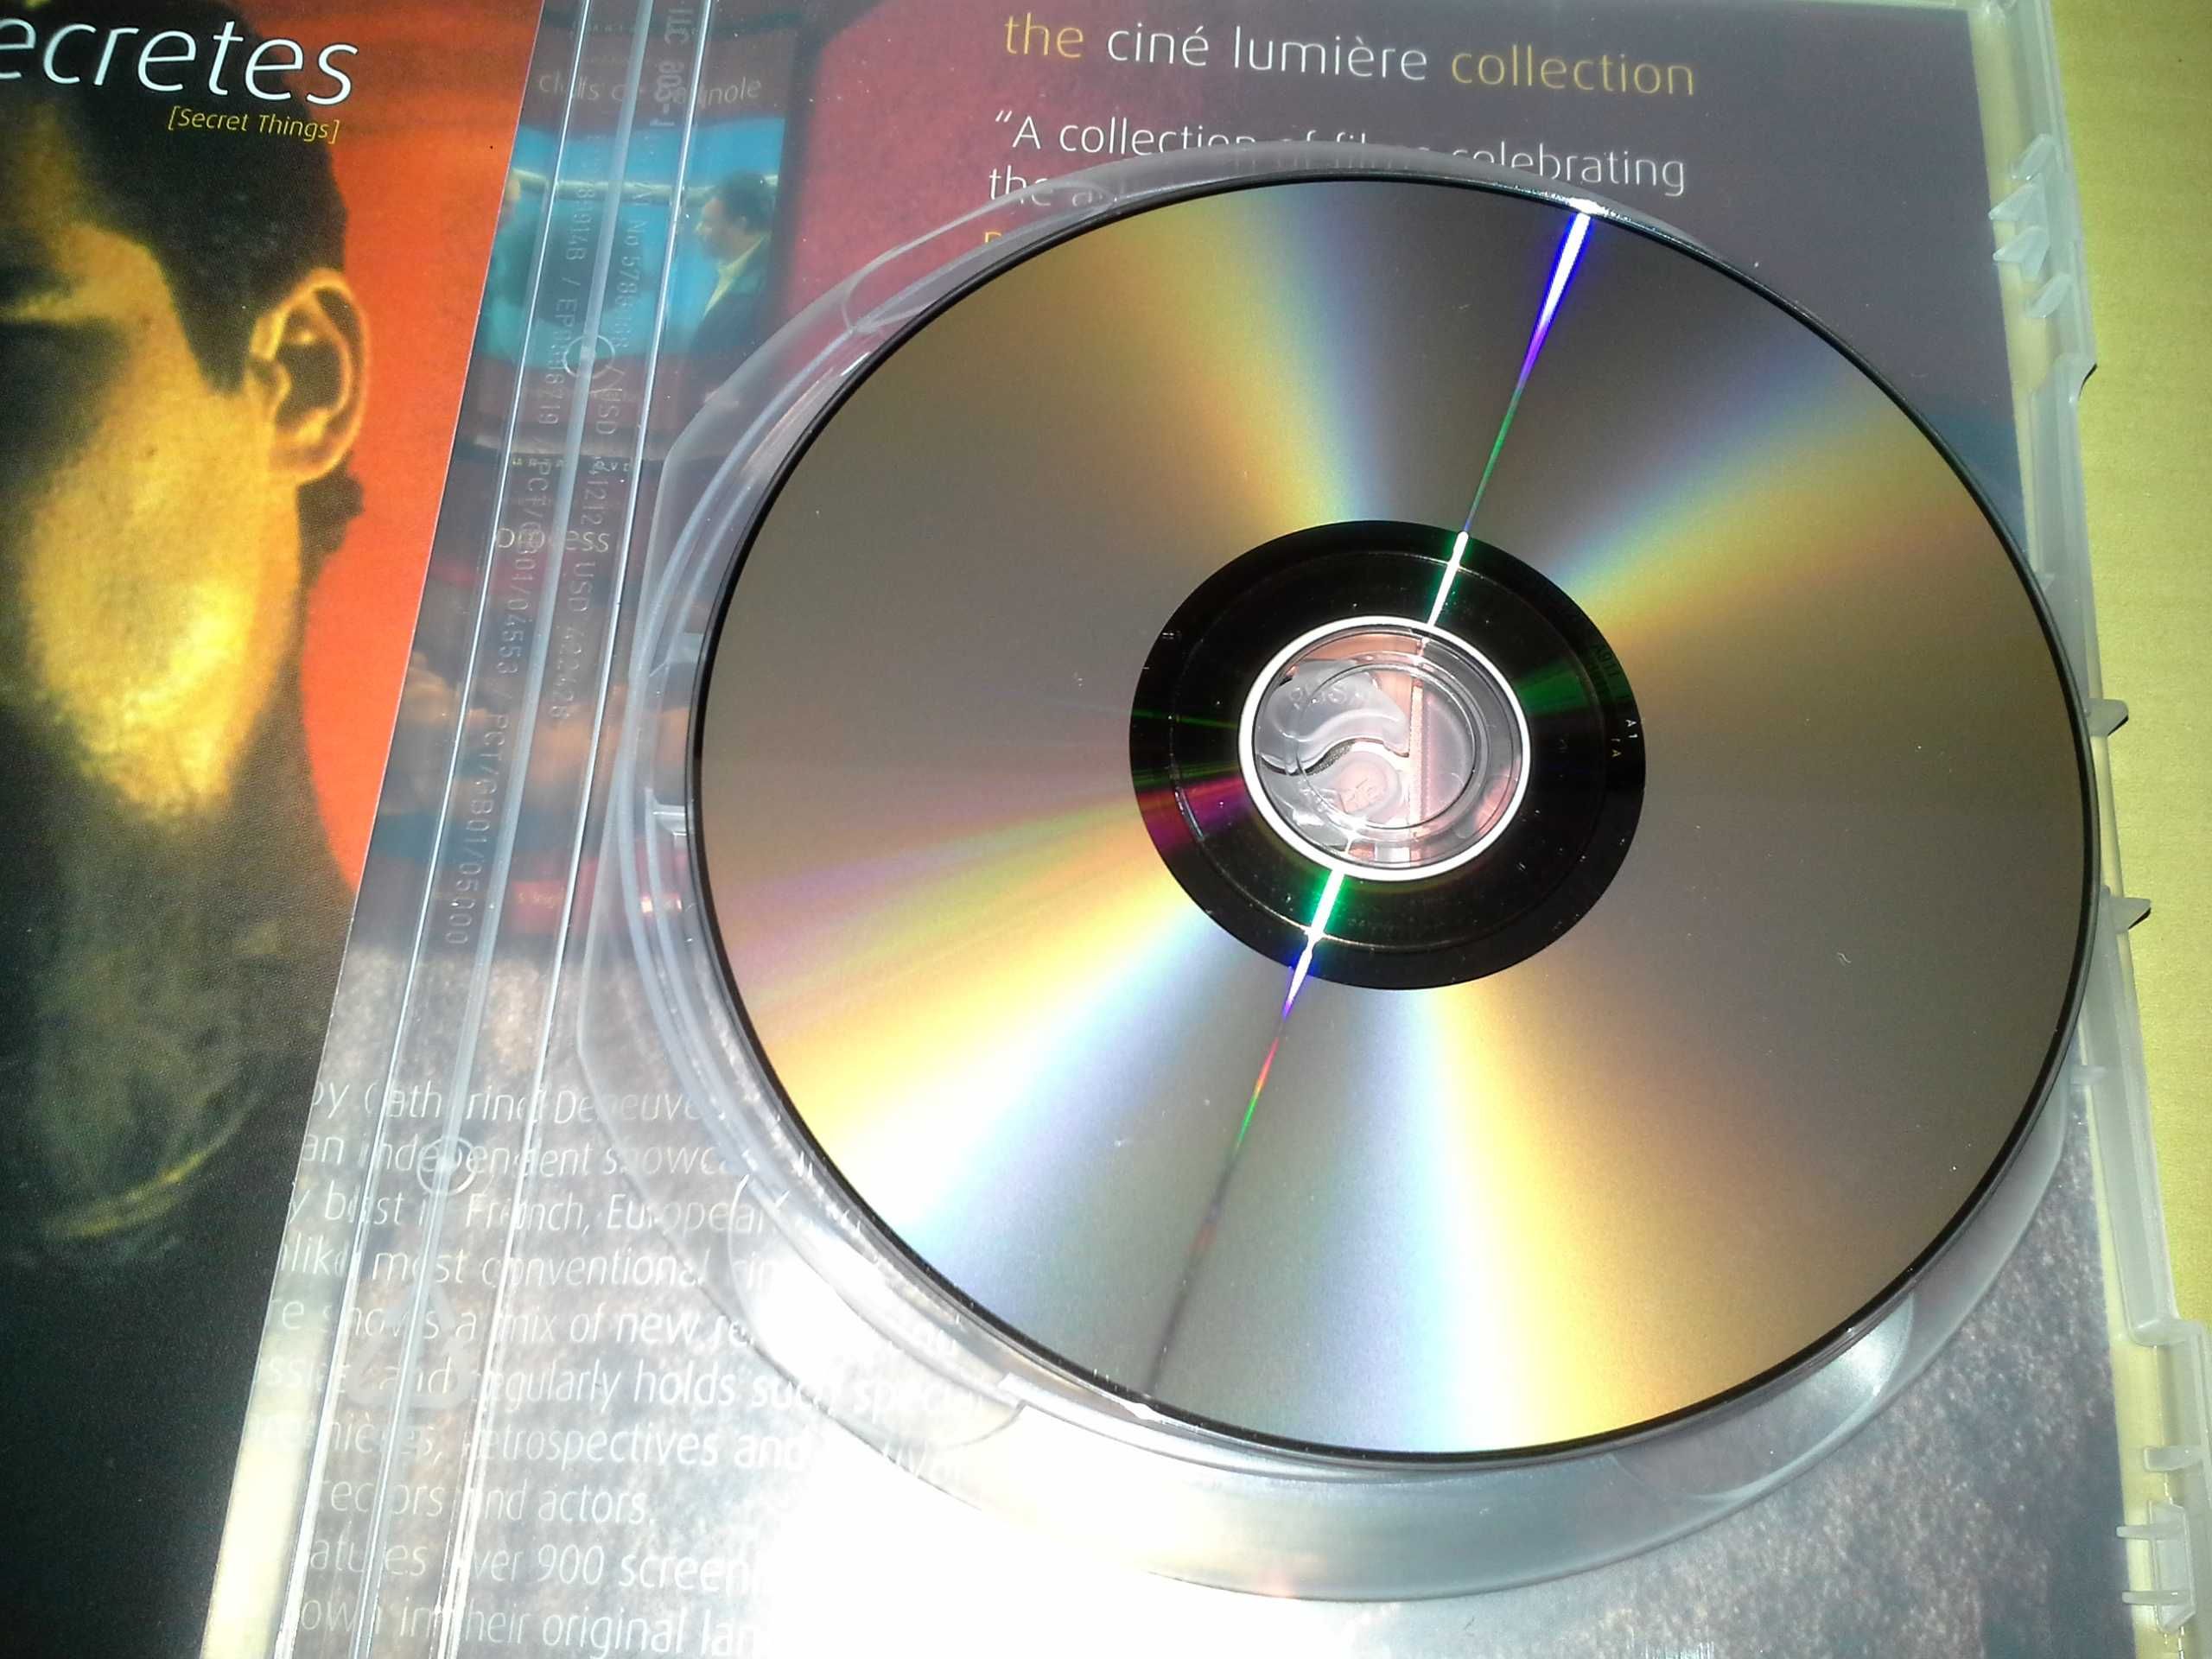 NOVO / Les Choses Secrets / 2 x DVD